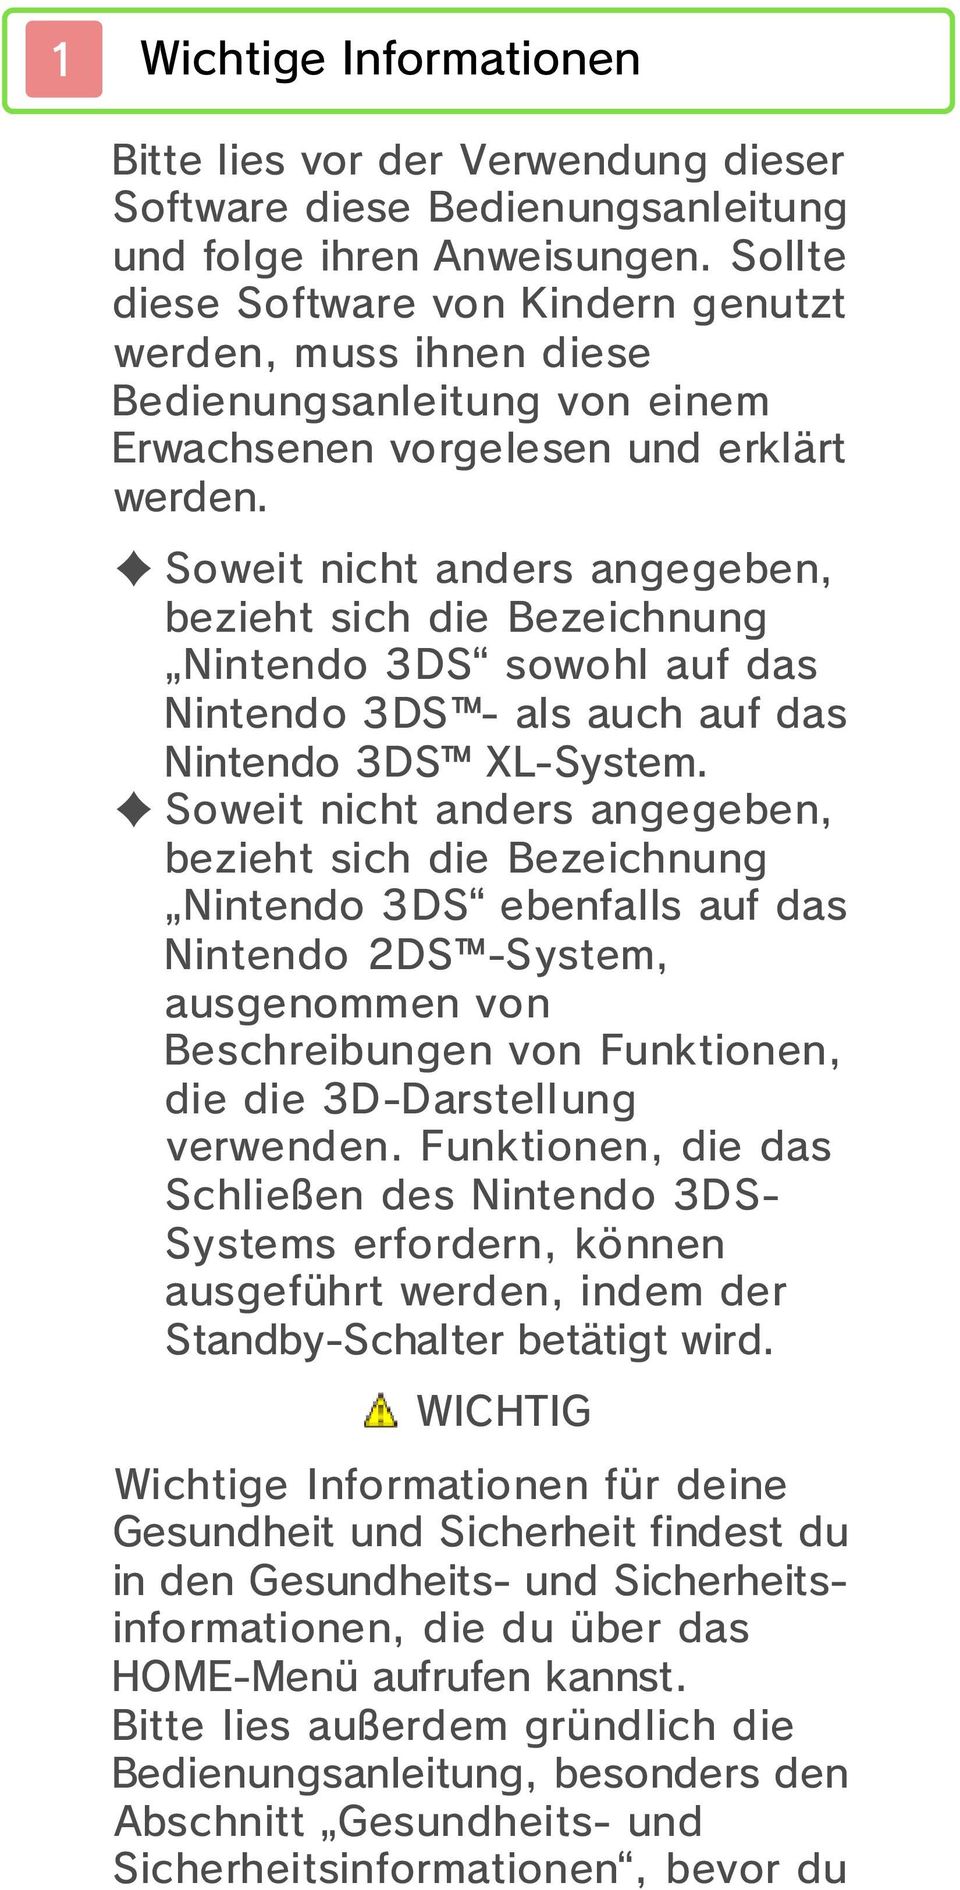 Soweit nicht anders angegeben, bezieht sich die Bezeichnung Nintendo 3DS sowohl auf das Nintendo 3DS - als auch auf das Nintendo 3DS XL-System.